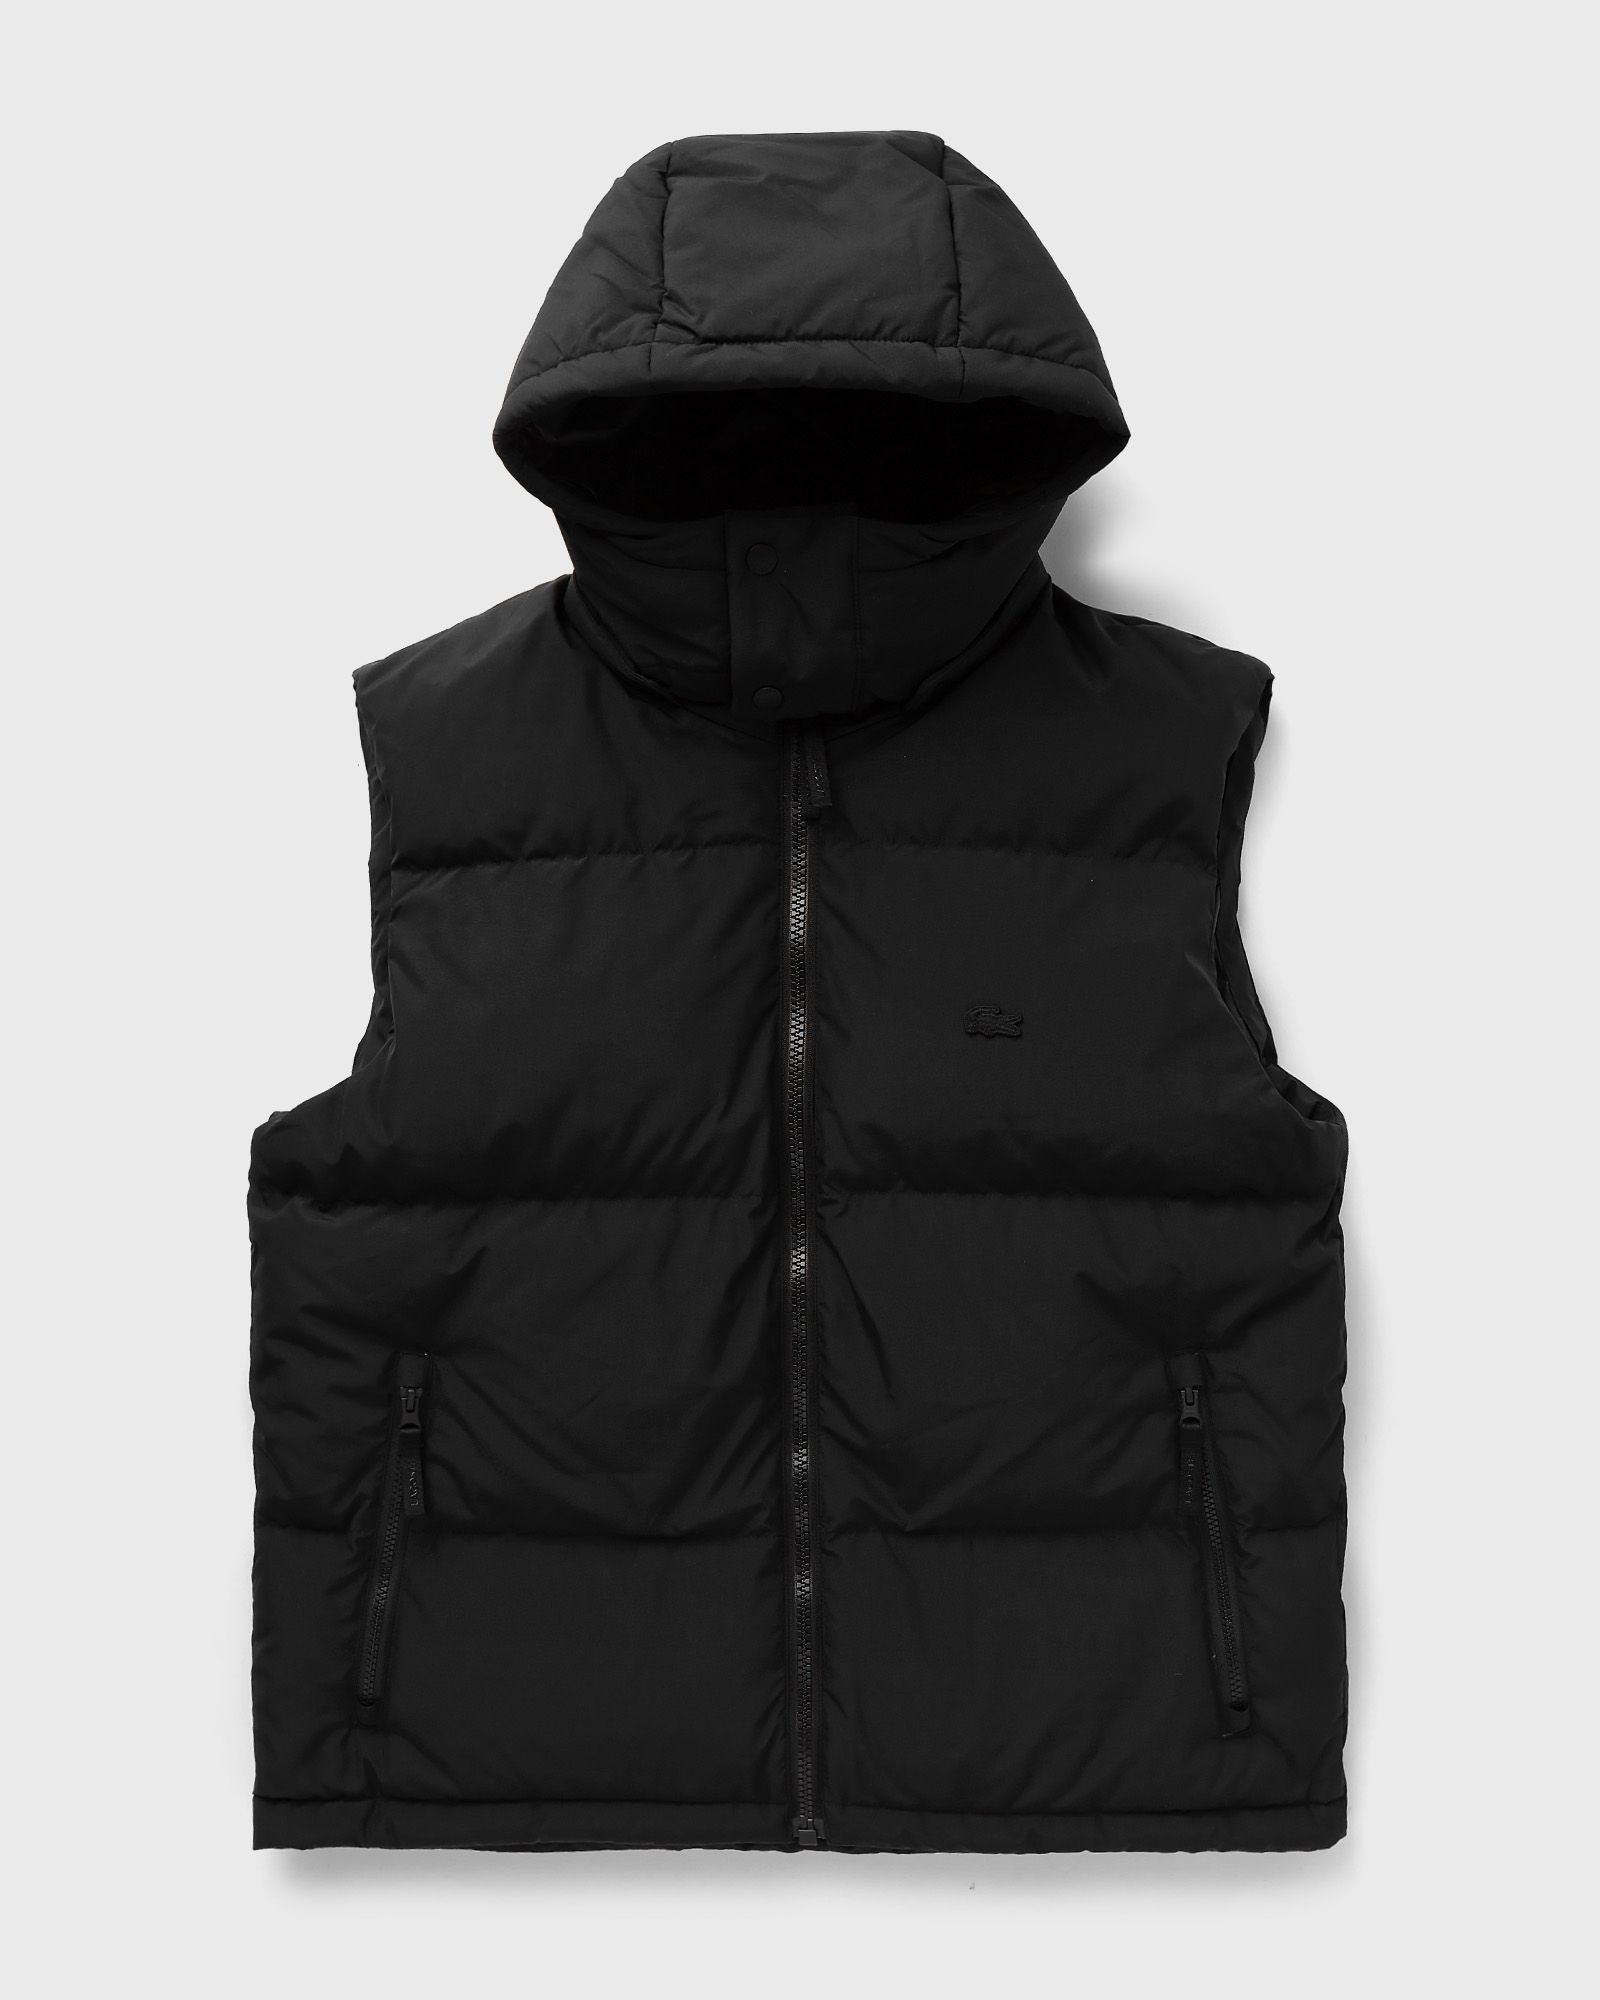 Lacoste - jacket men vests black in größe:xl